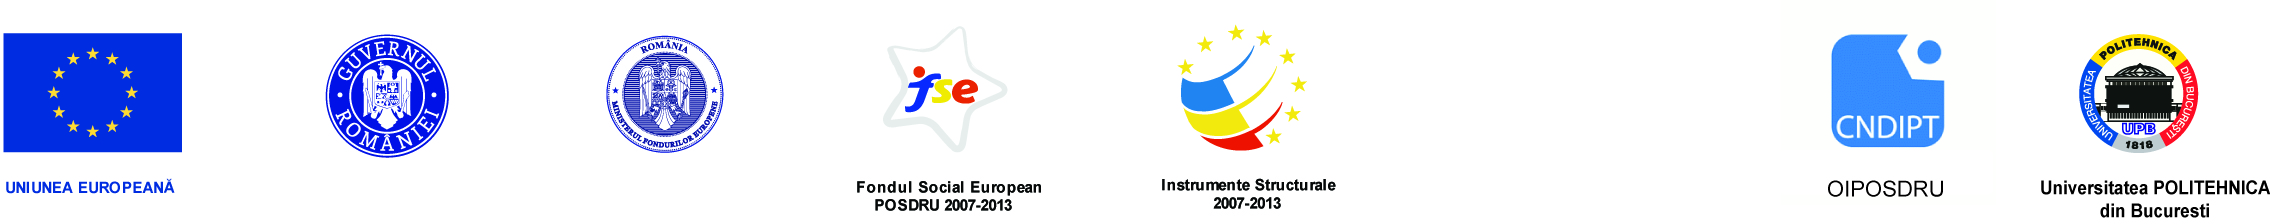 logo_proiecte europene_oi-cndipt